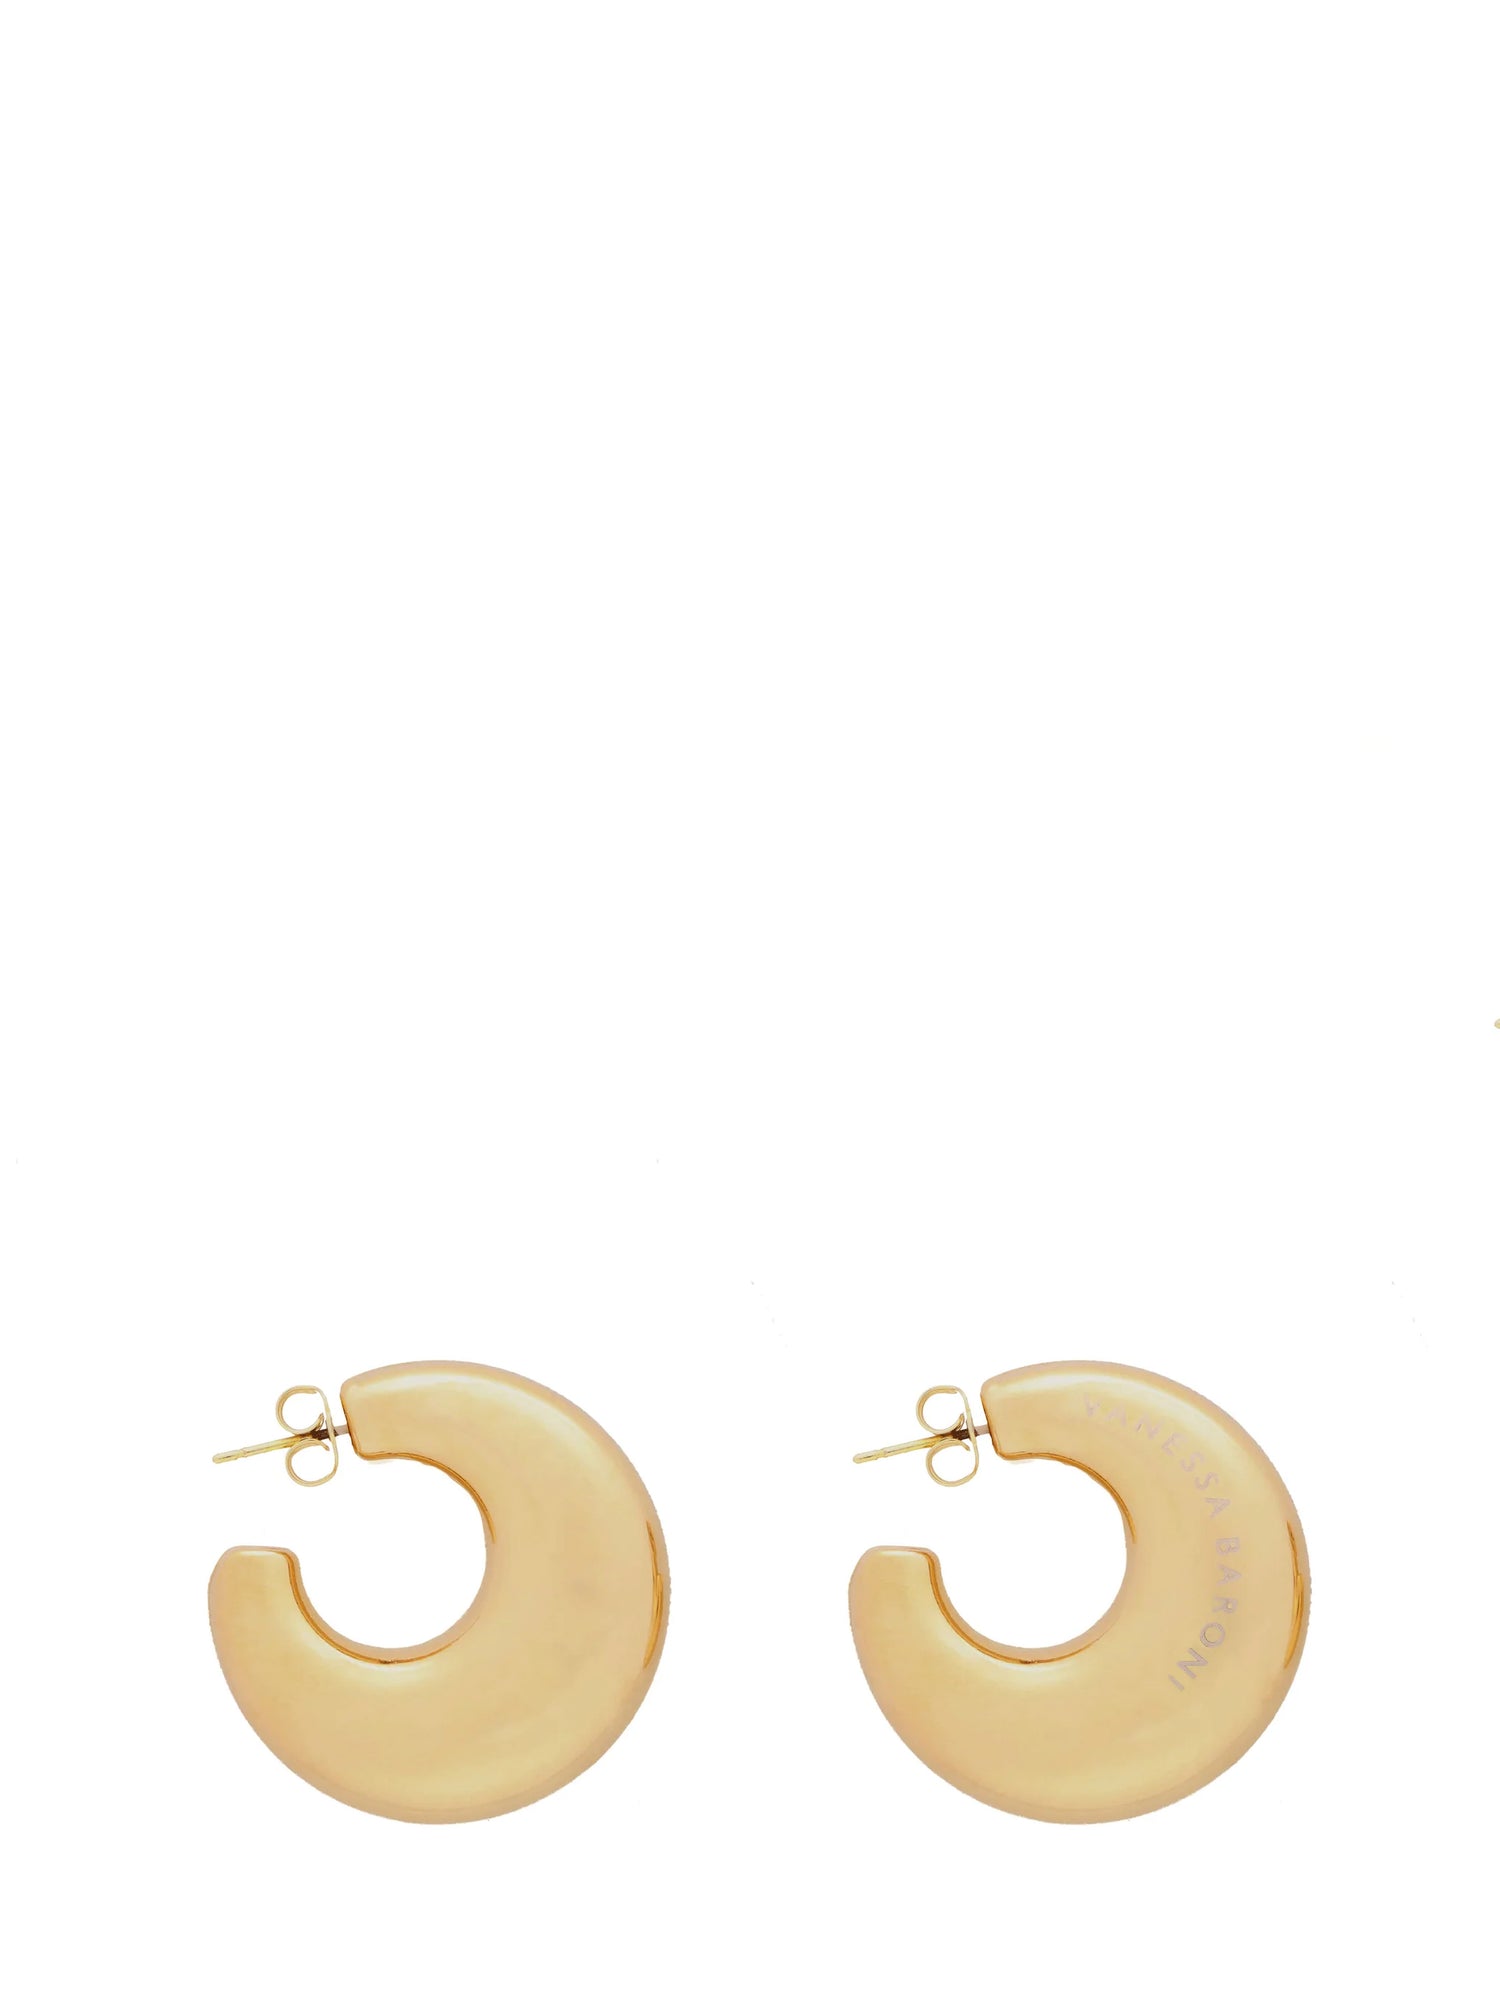 Moon earring, gold